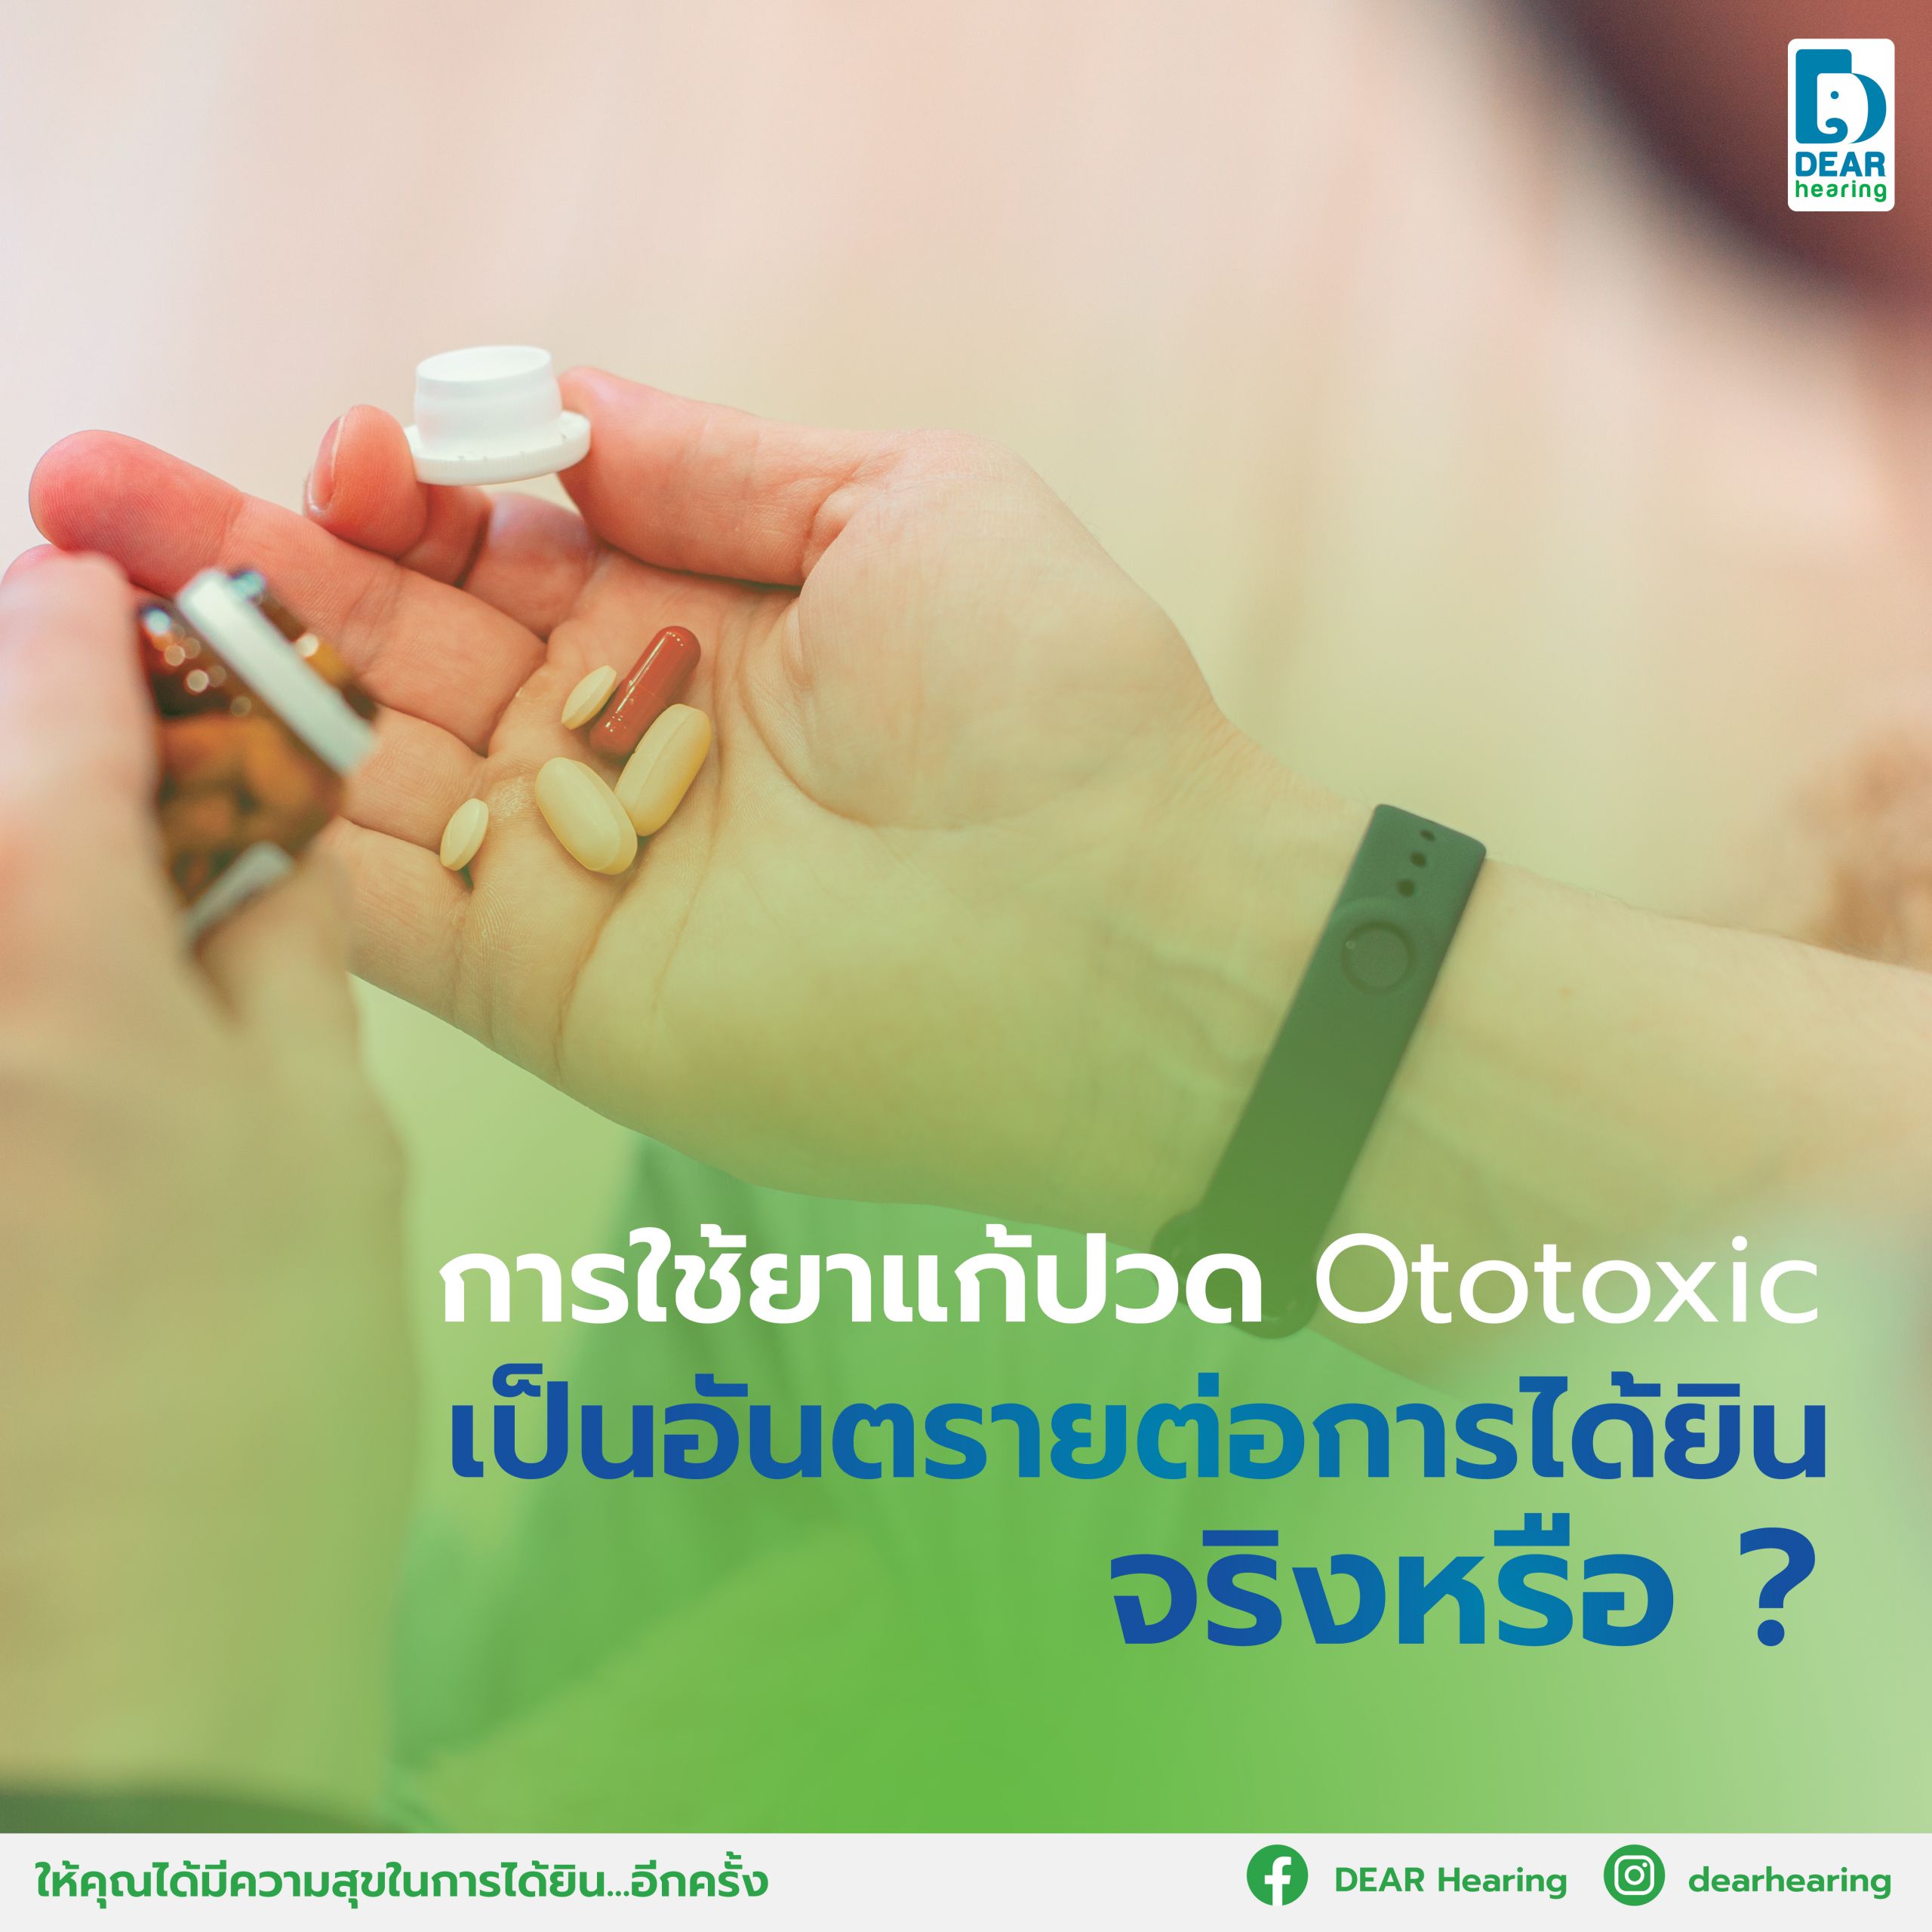 using-the-painkiller-ototoxic